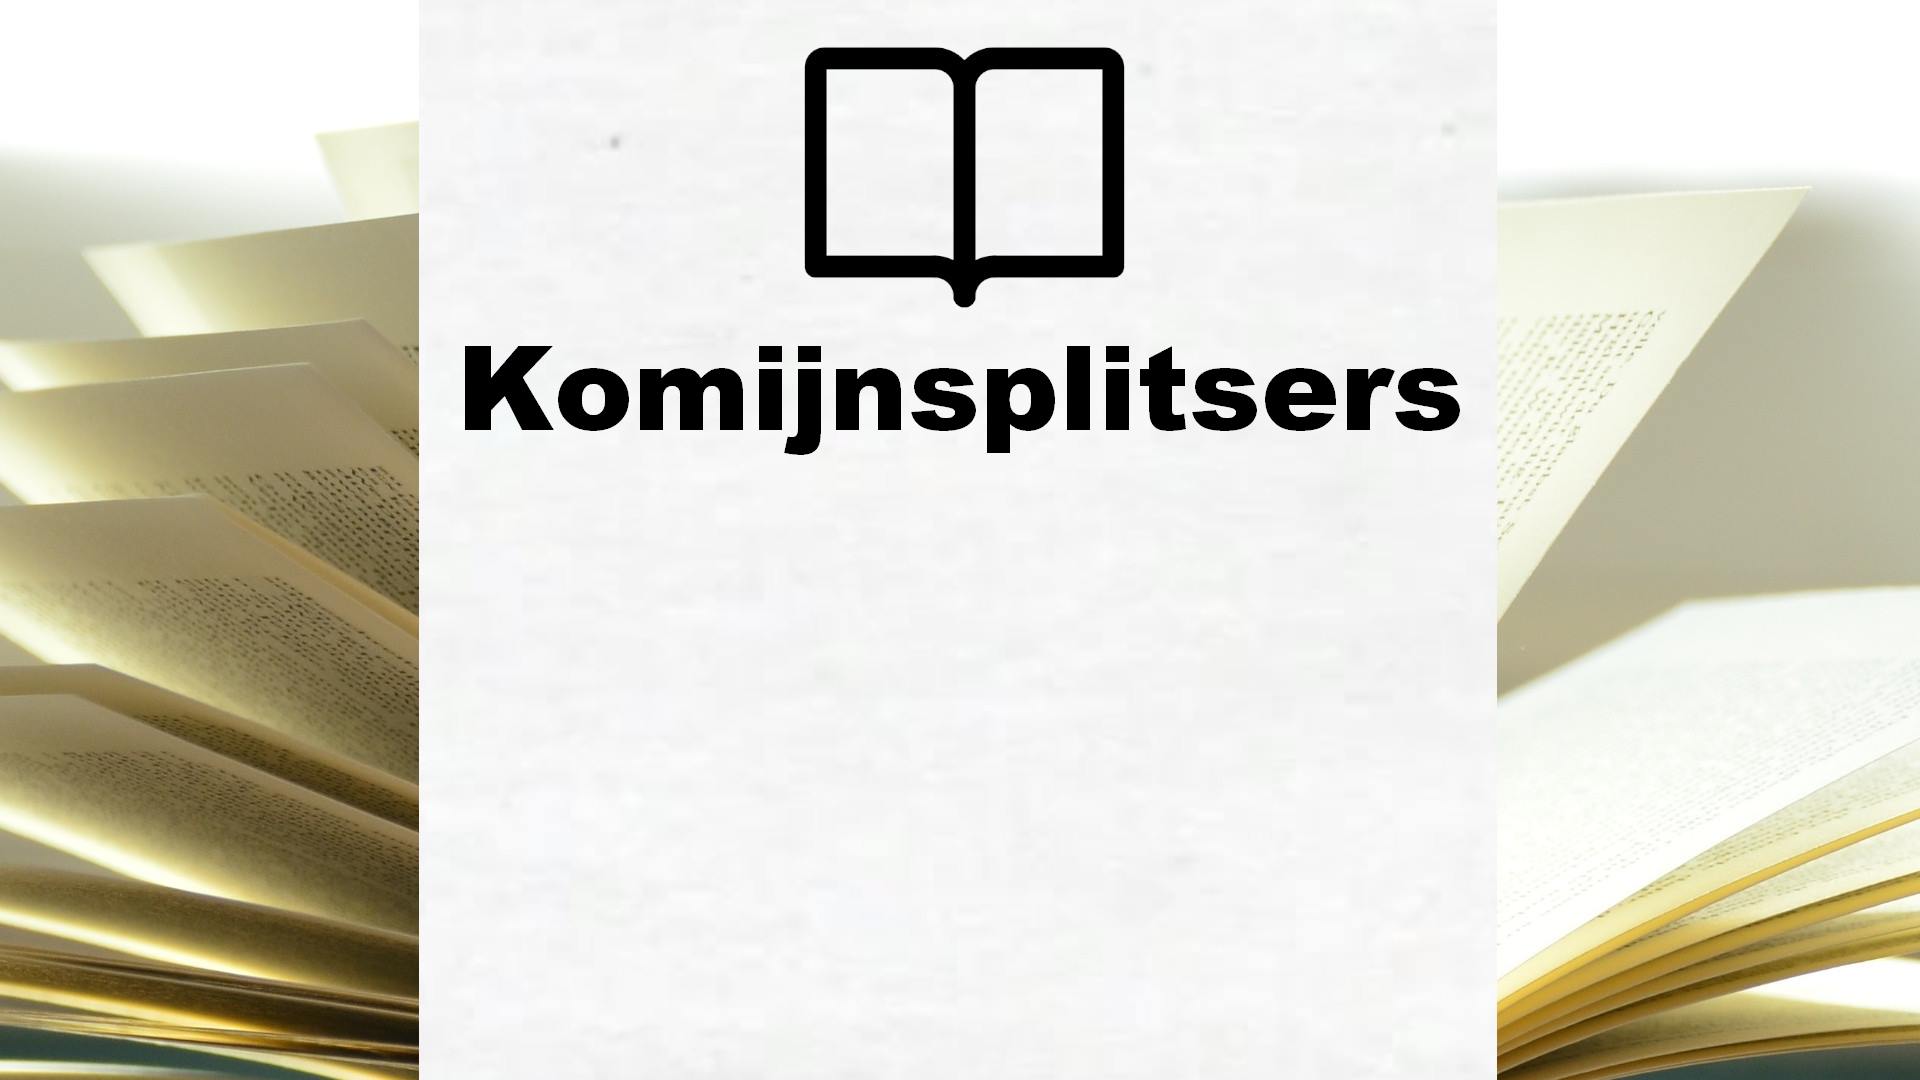 Komijnsplitsers – Boekrecensie